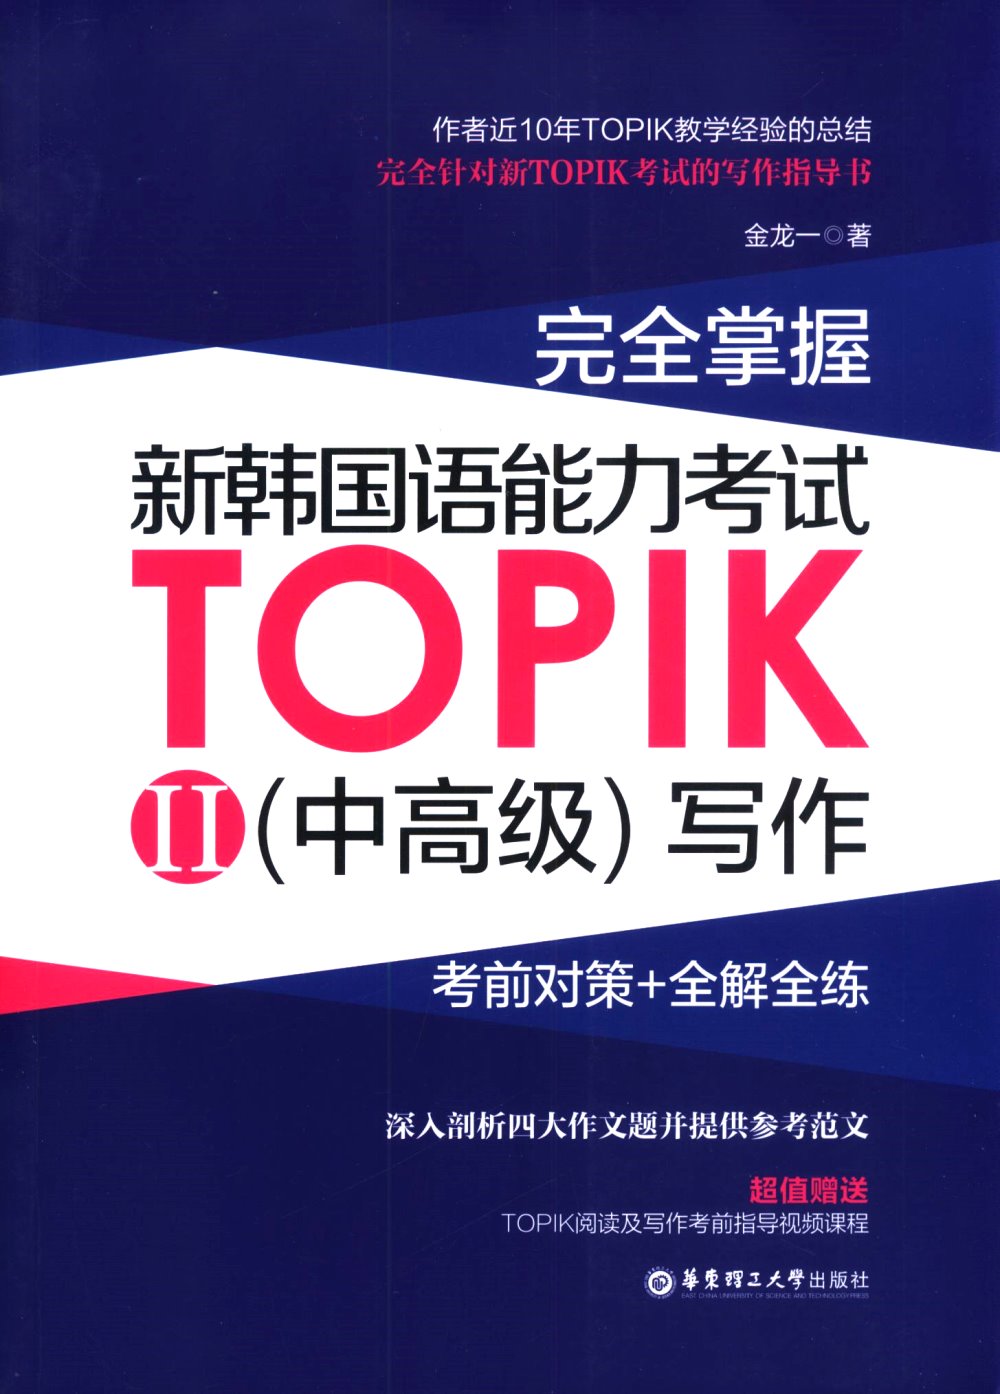 完全掌握·新韓國語能力考試TOPIK（II）（中高級）寫作：考前對策+全解全練